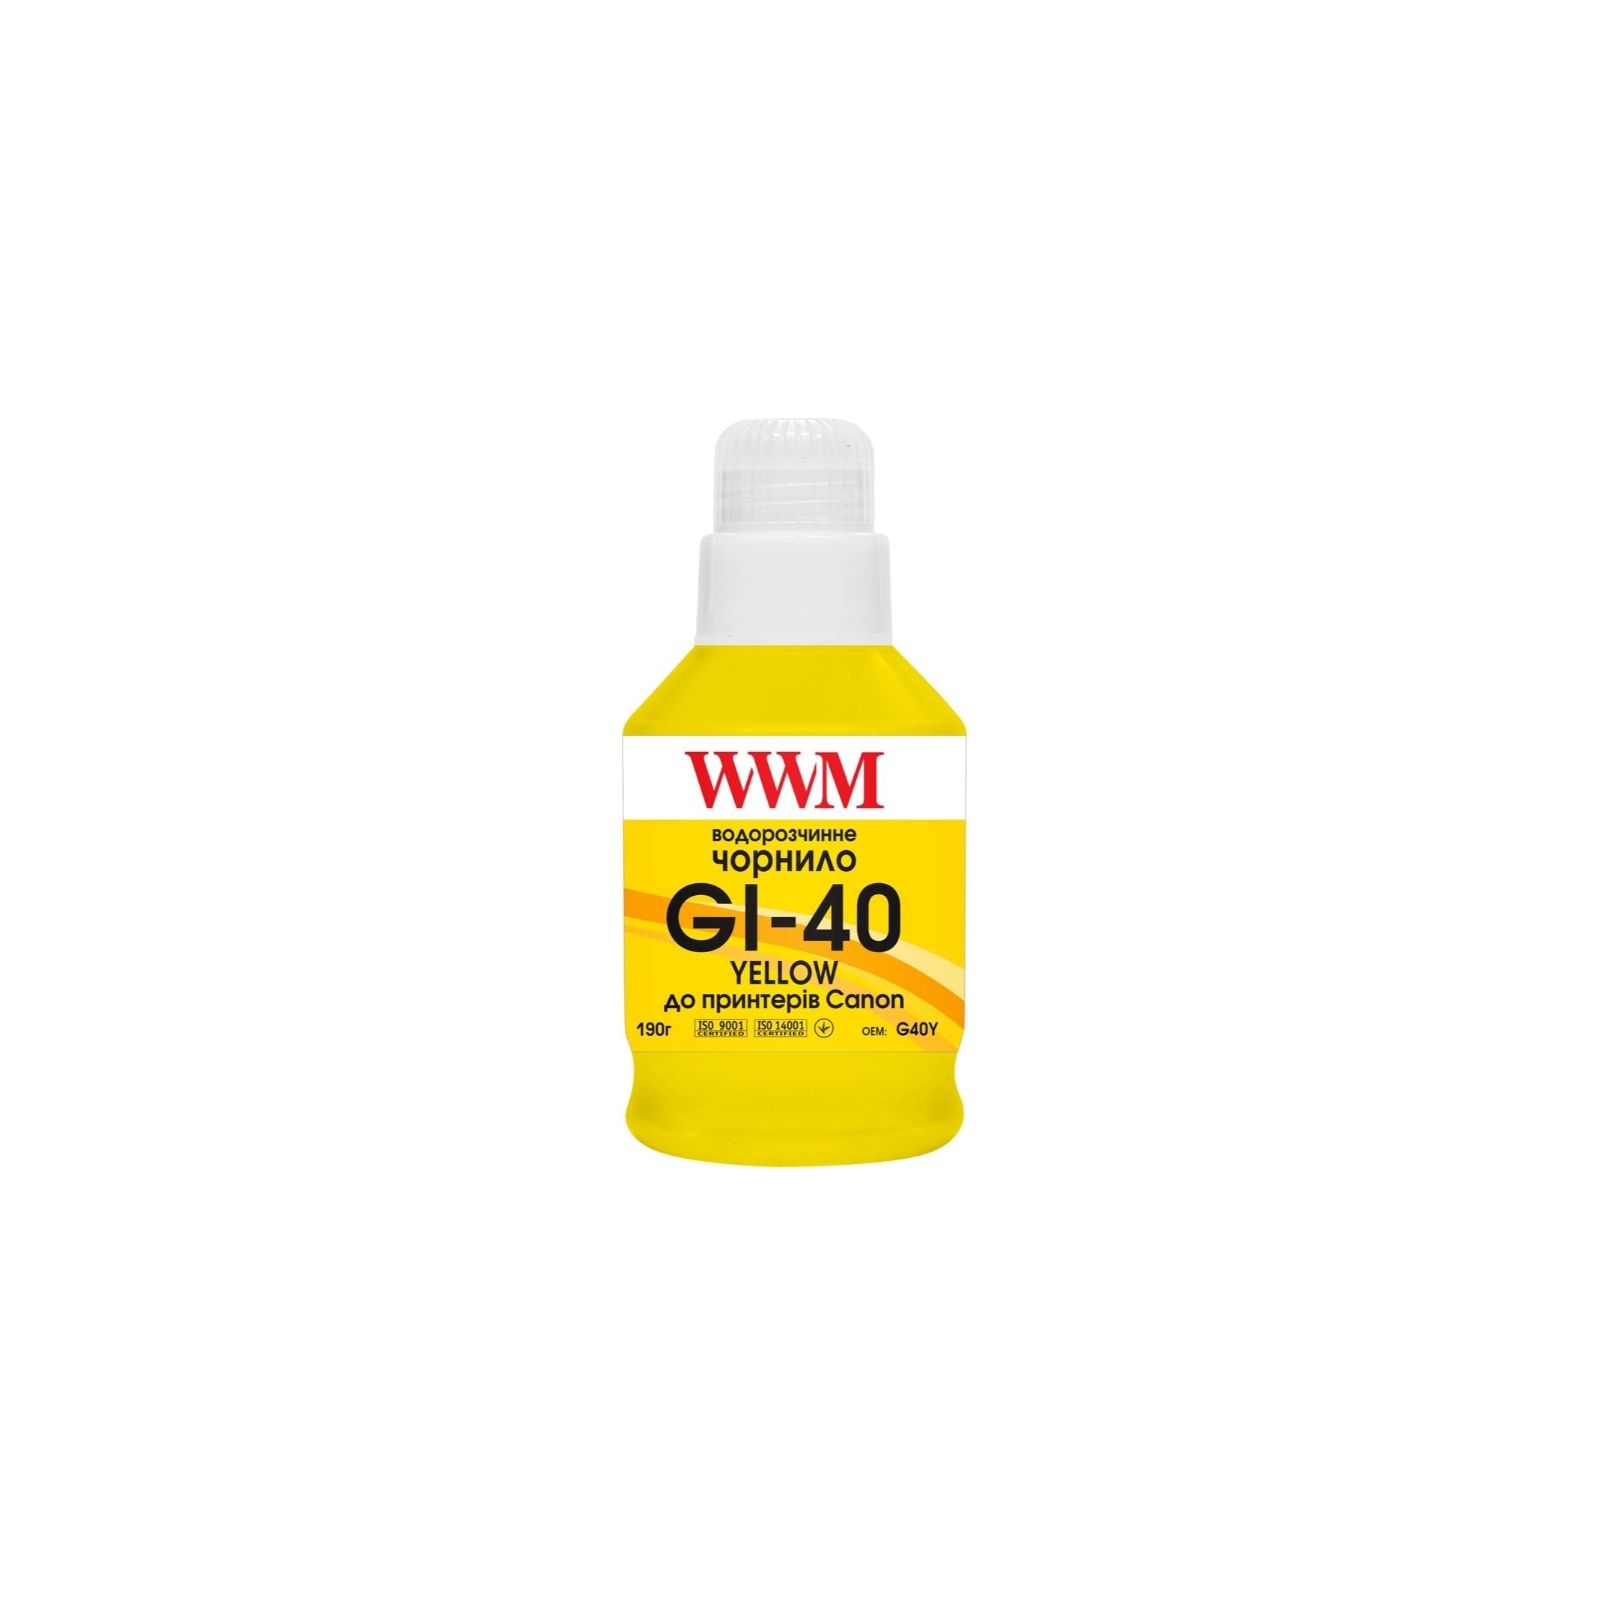 Чернила WWM Canon GI-40 для G5040/G6040 190г Yellow (KeyLock) (G40Y)